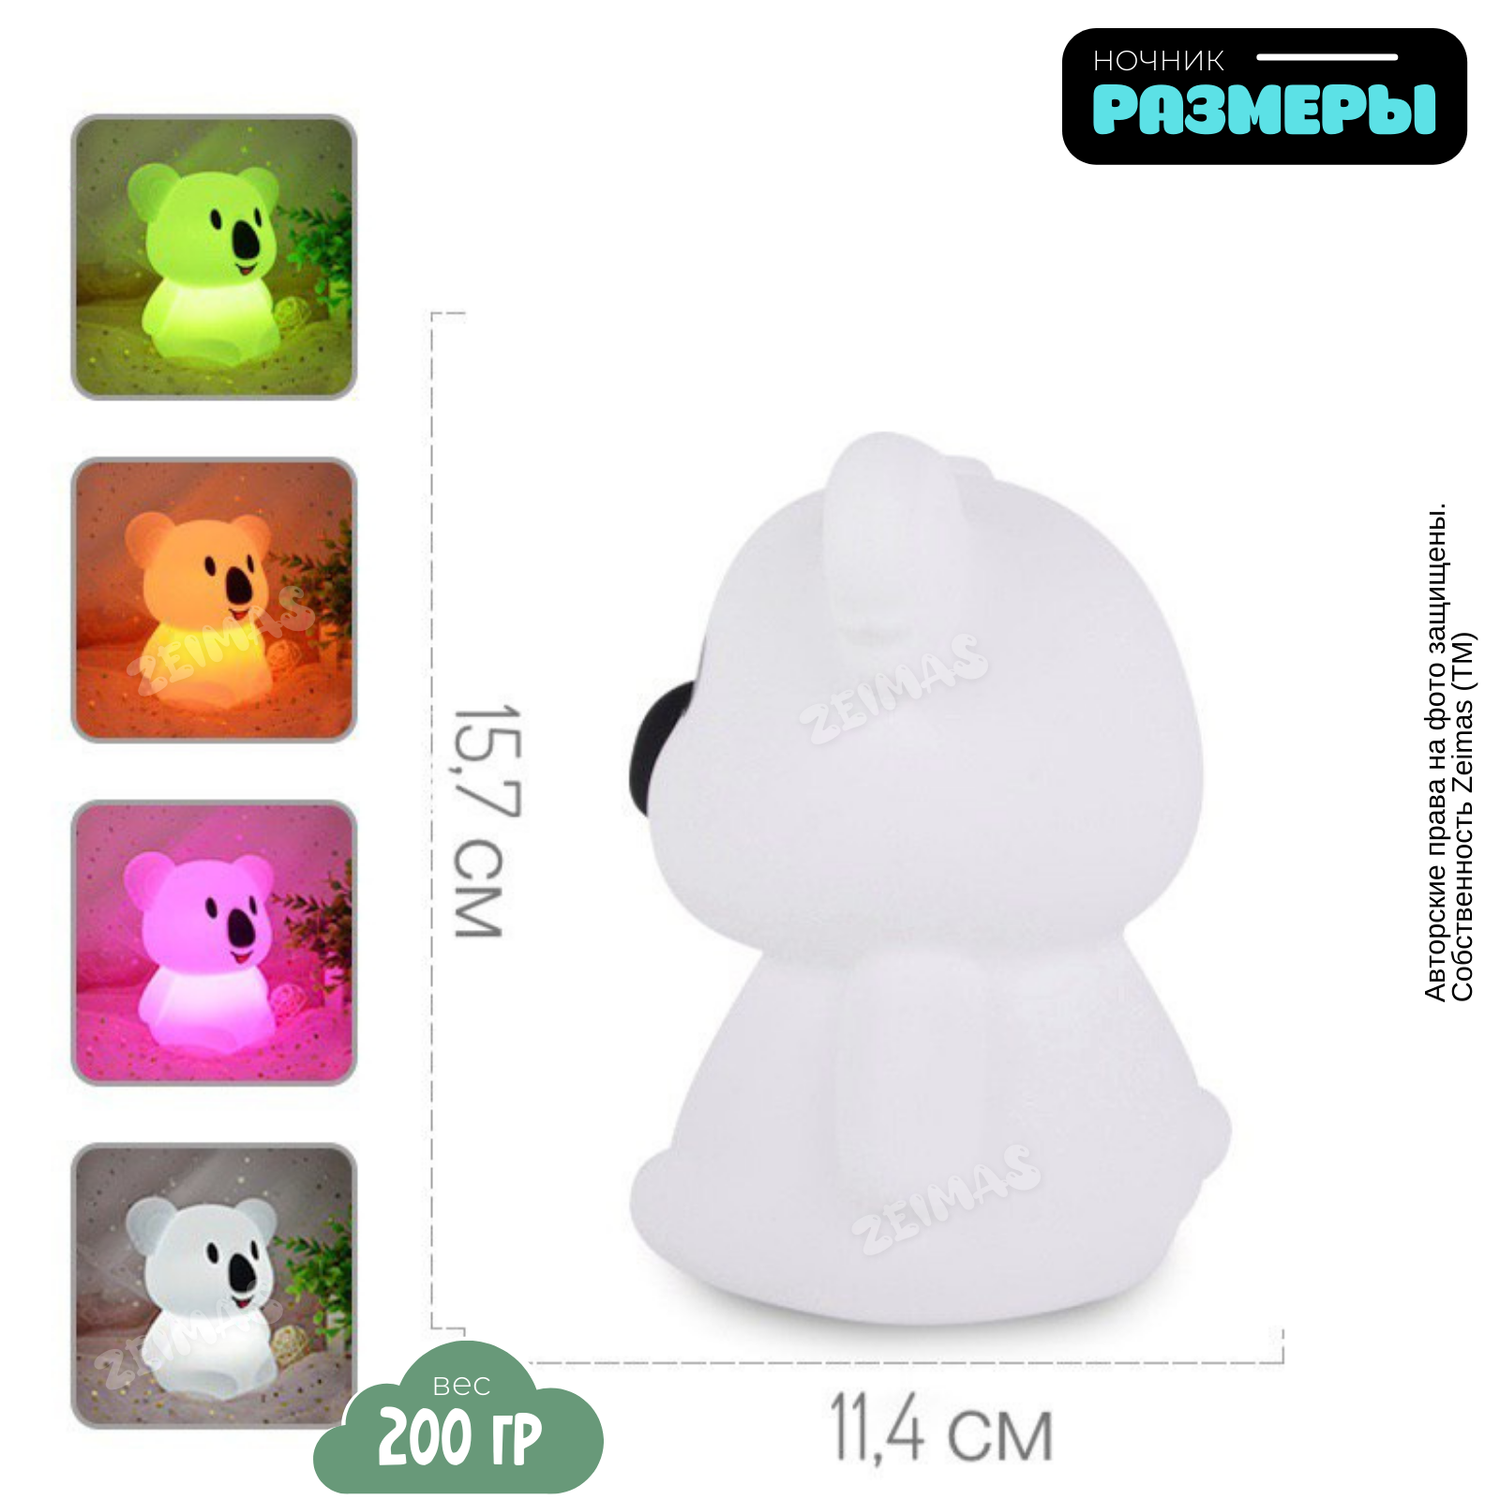 Ночник детский силиконовый Zeimas светильник игрушка Коала с пультом 9 цветов большой размер - фото 3